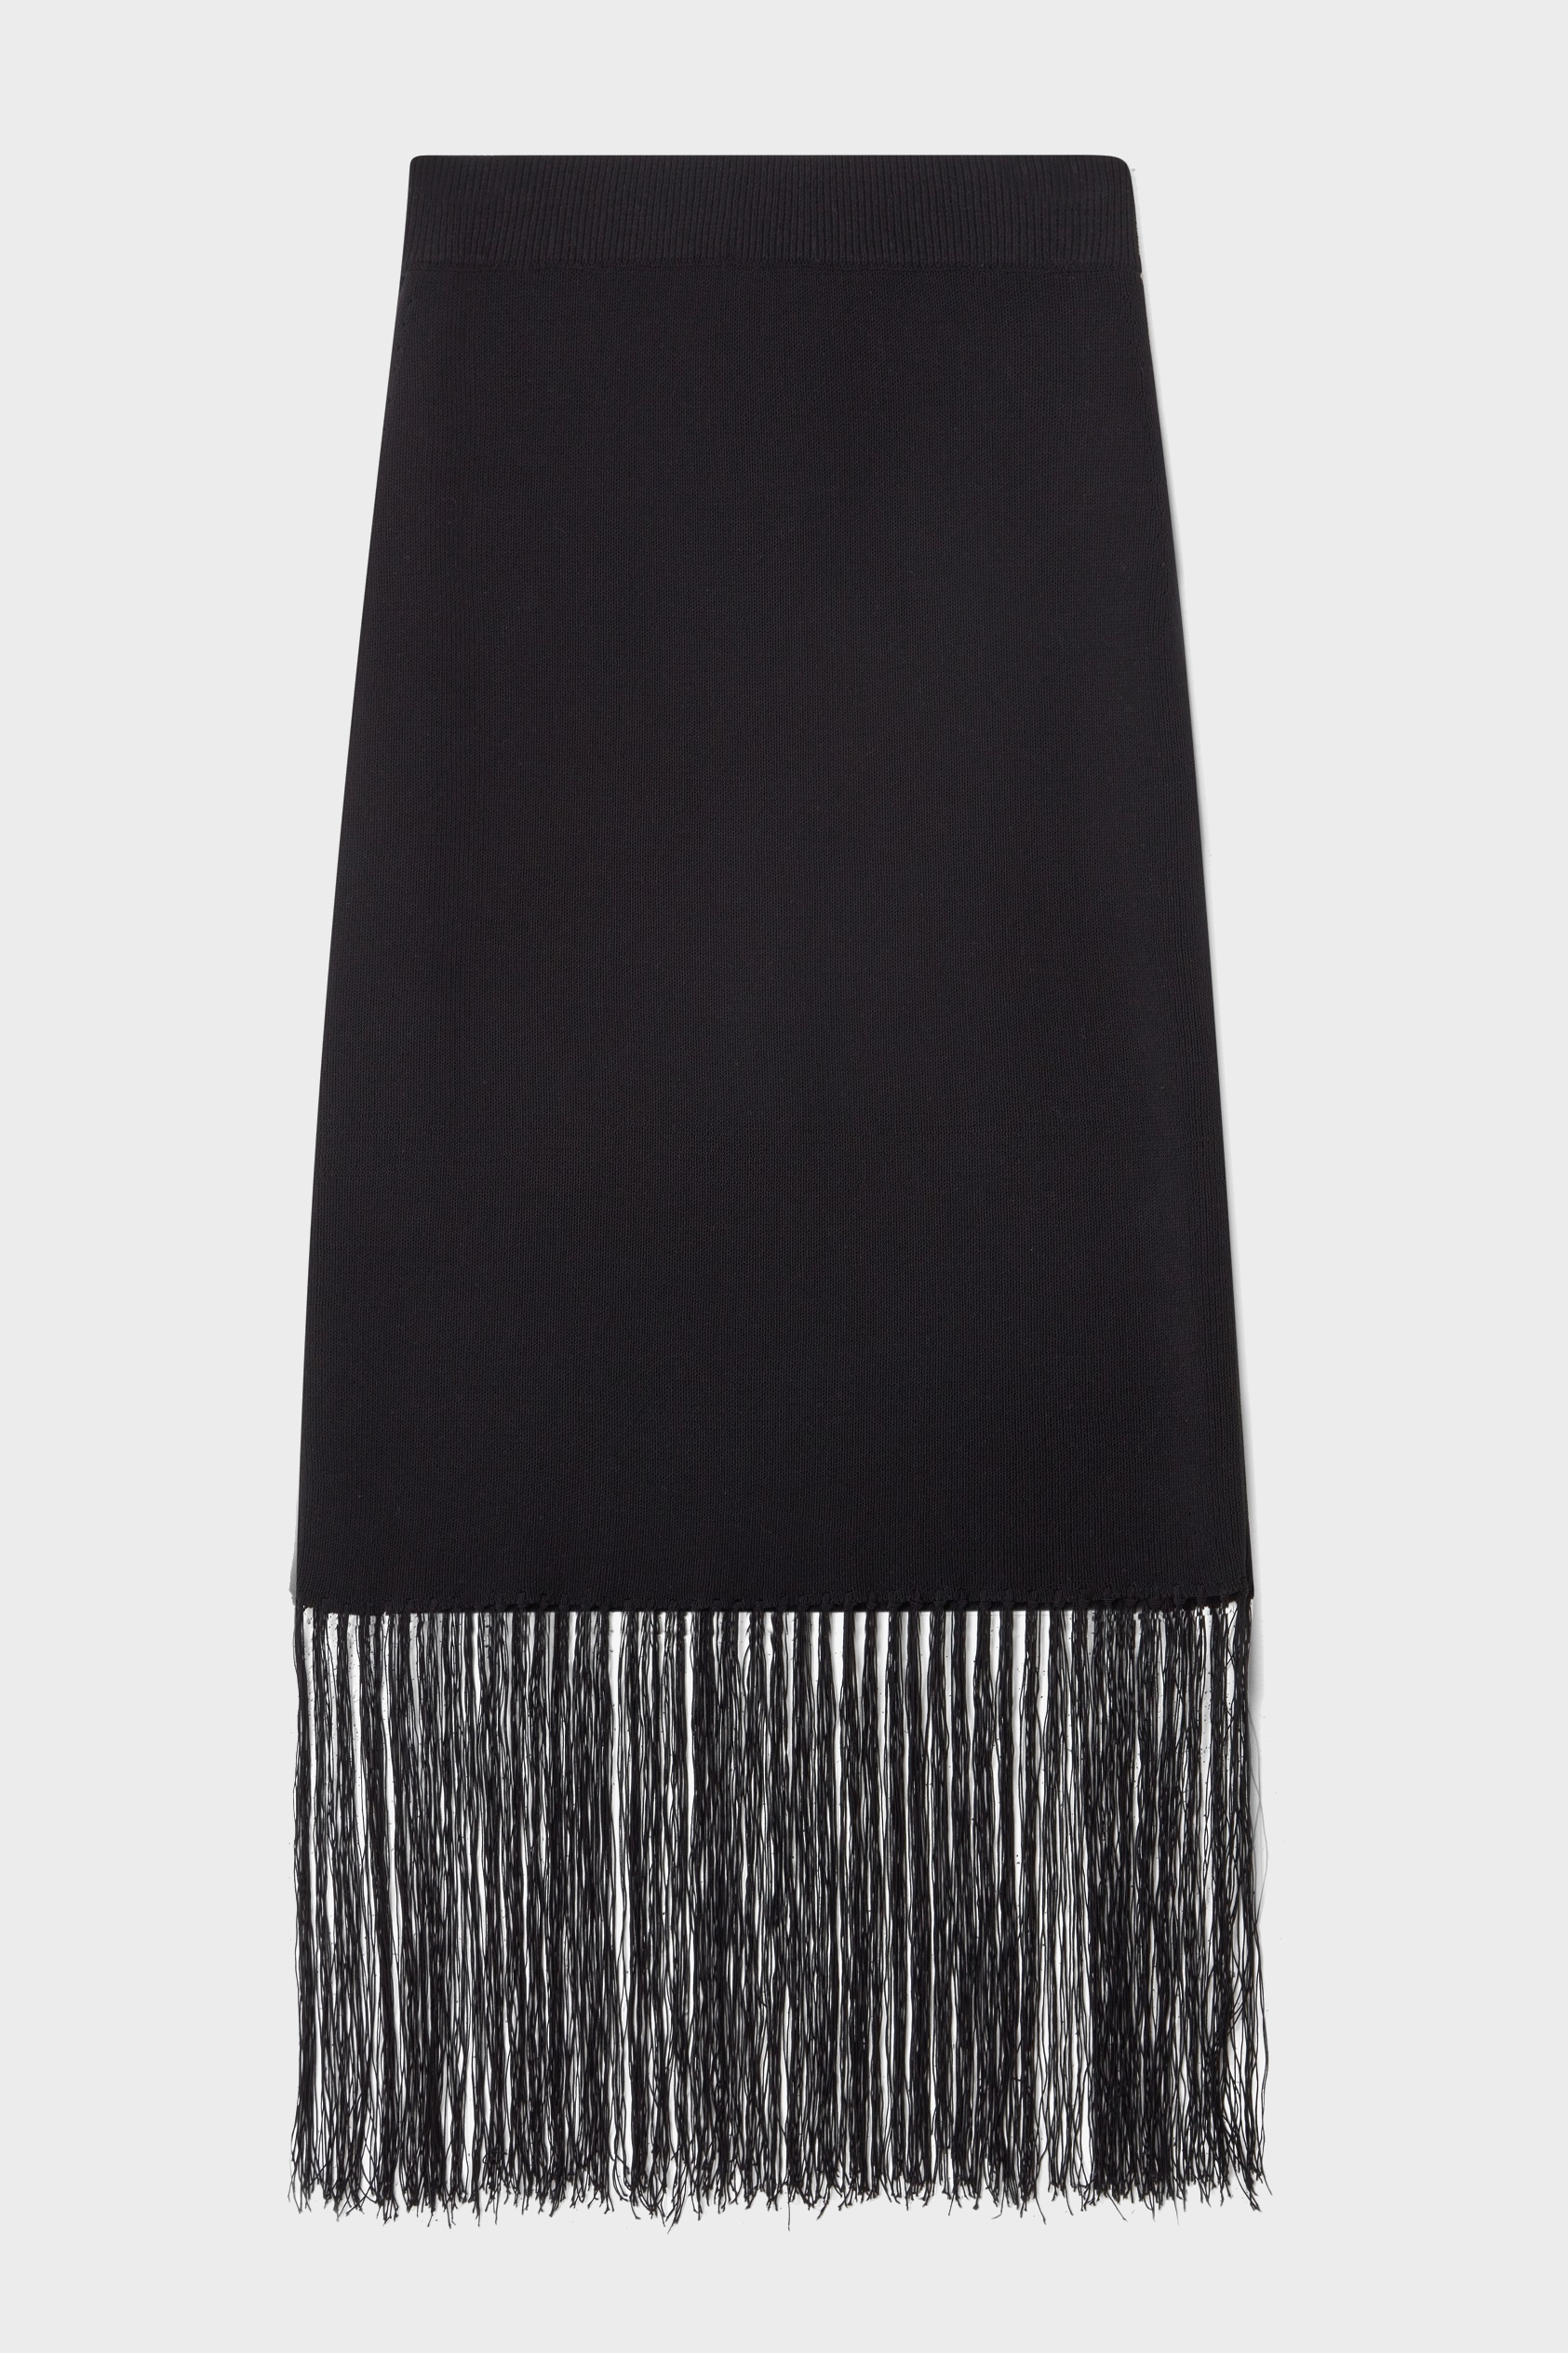 DAGMAR Fringe Skirt in Black L